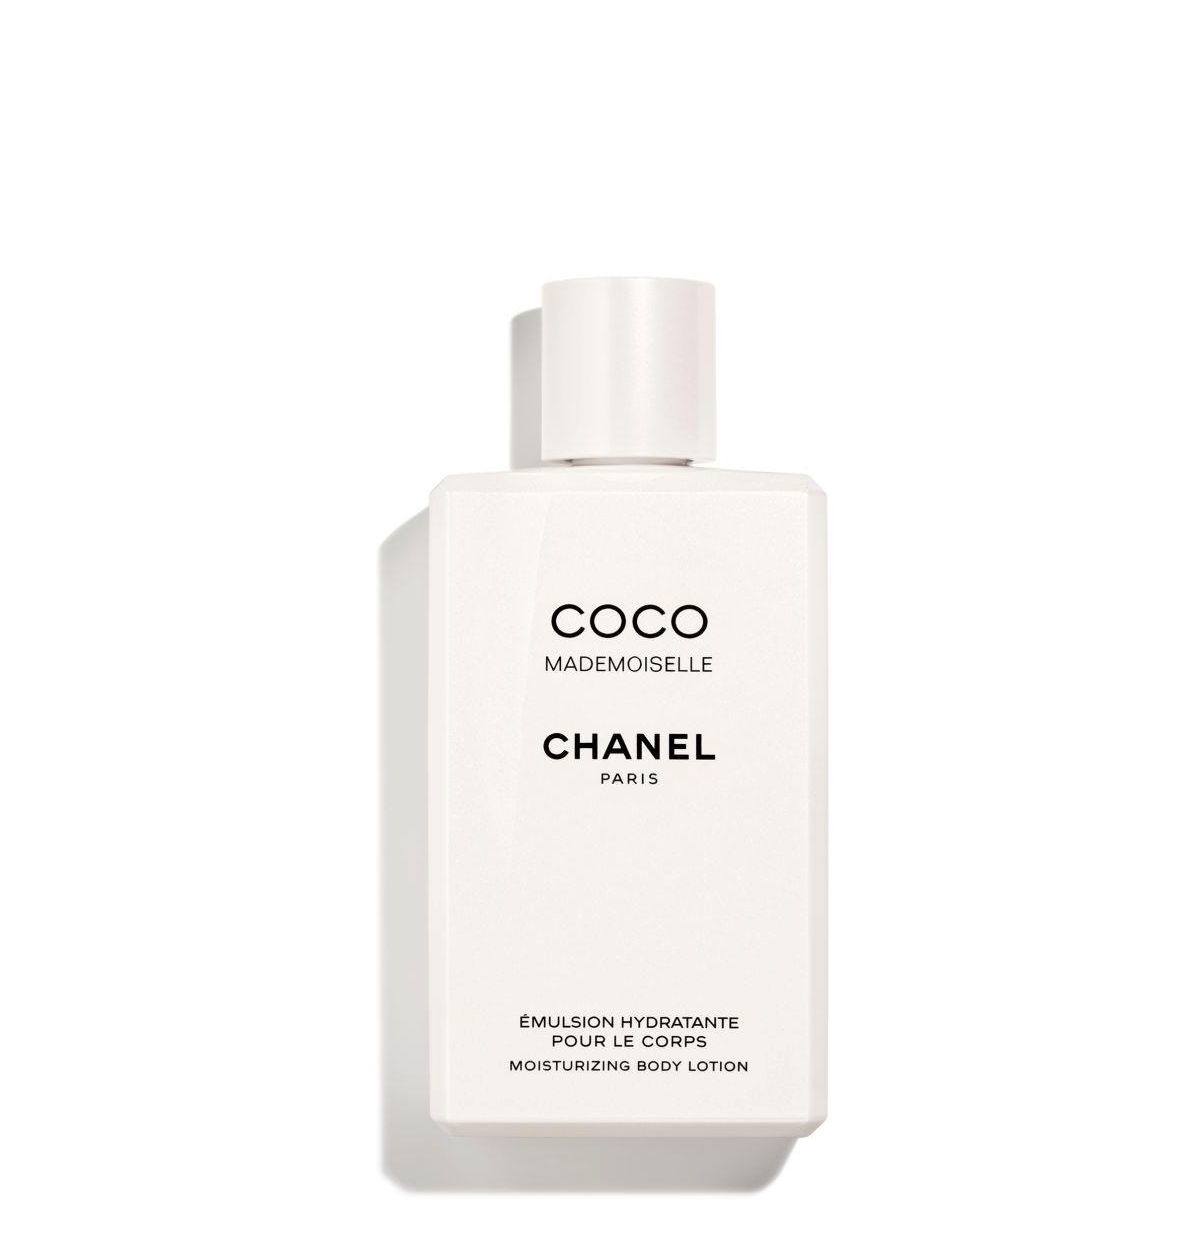 CHANEL Eau de Parfum Intense Set & Reviews - Perfume - Beauty - Macy's